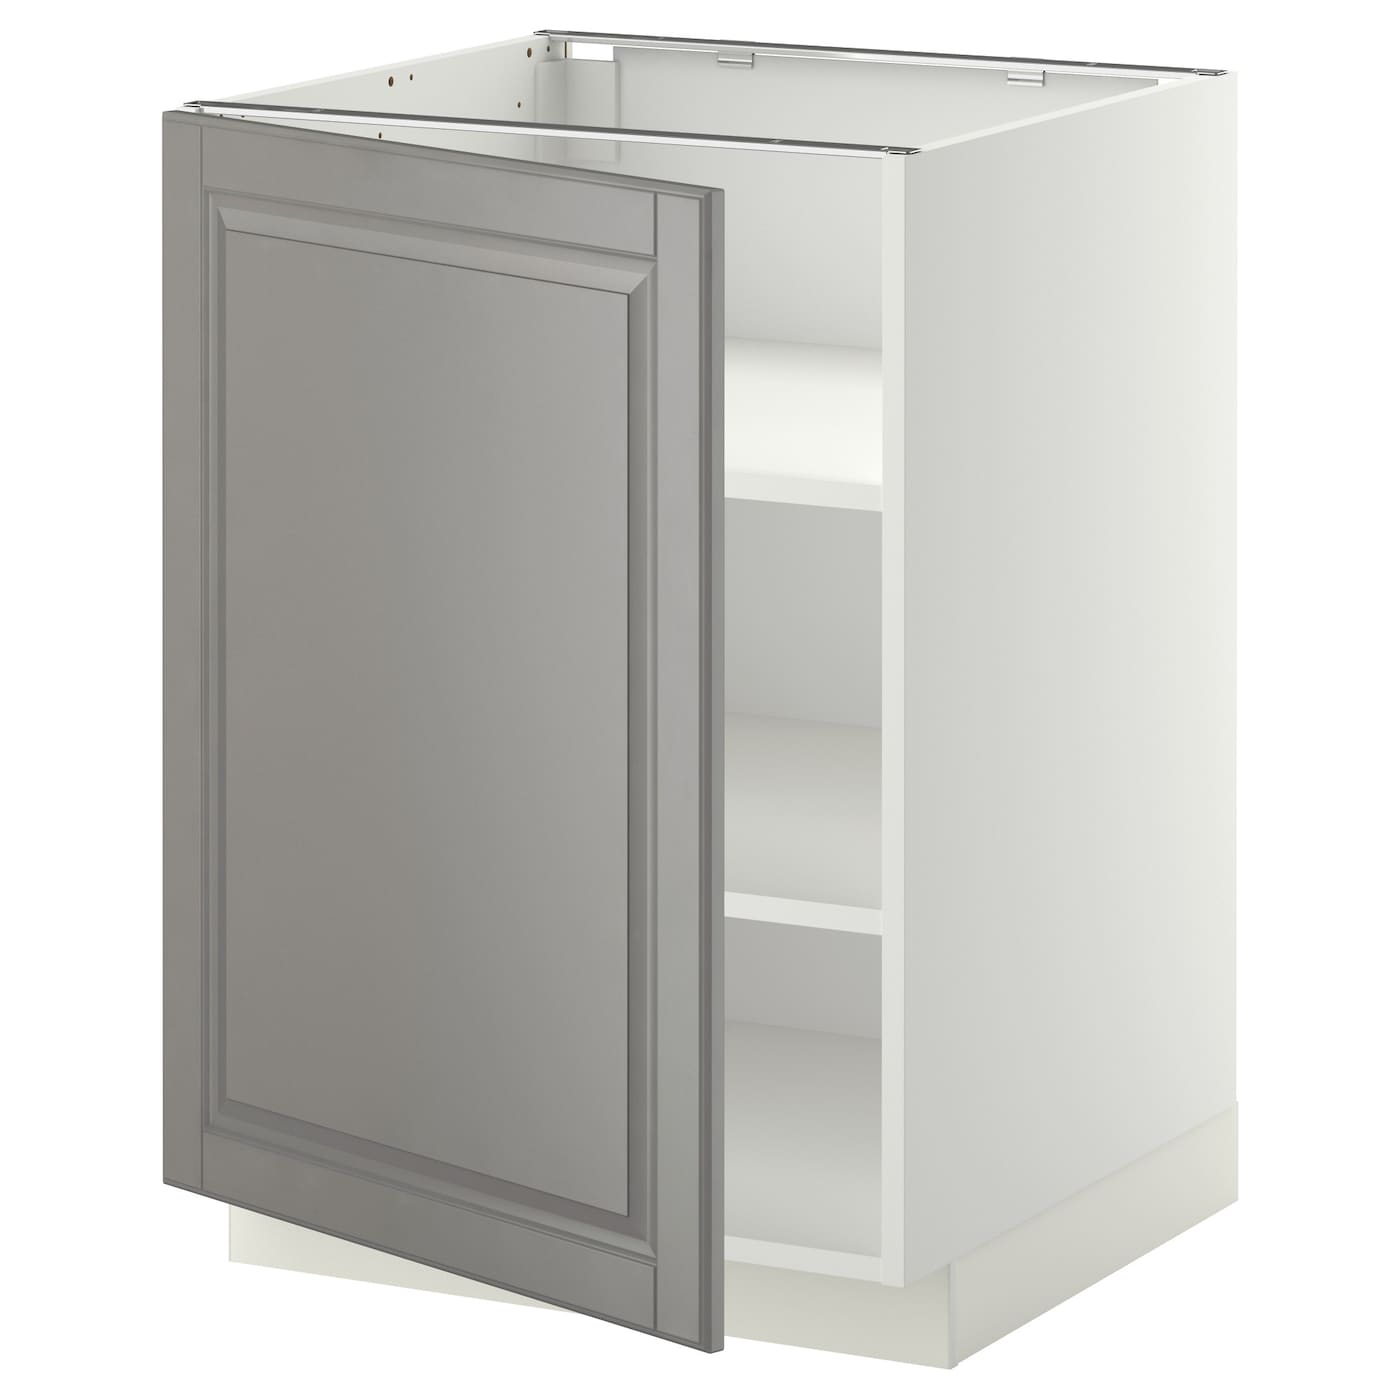 Напольный шкаф с полками - IKEA METOD, 60х60 см, белый/серый МЕТОД ИКЕА